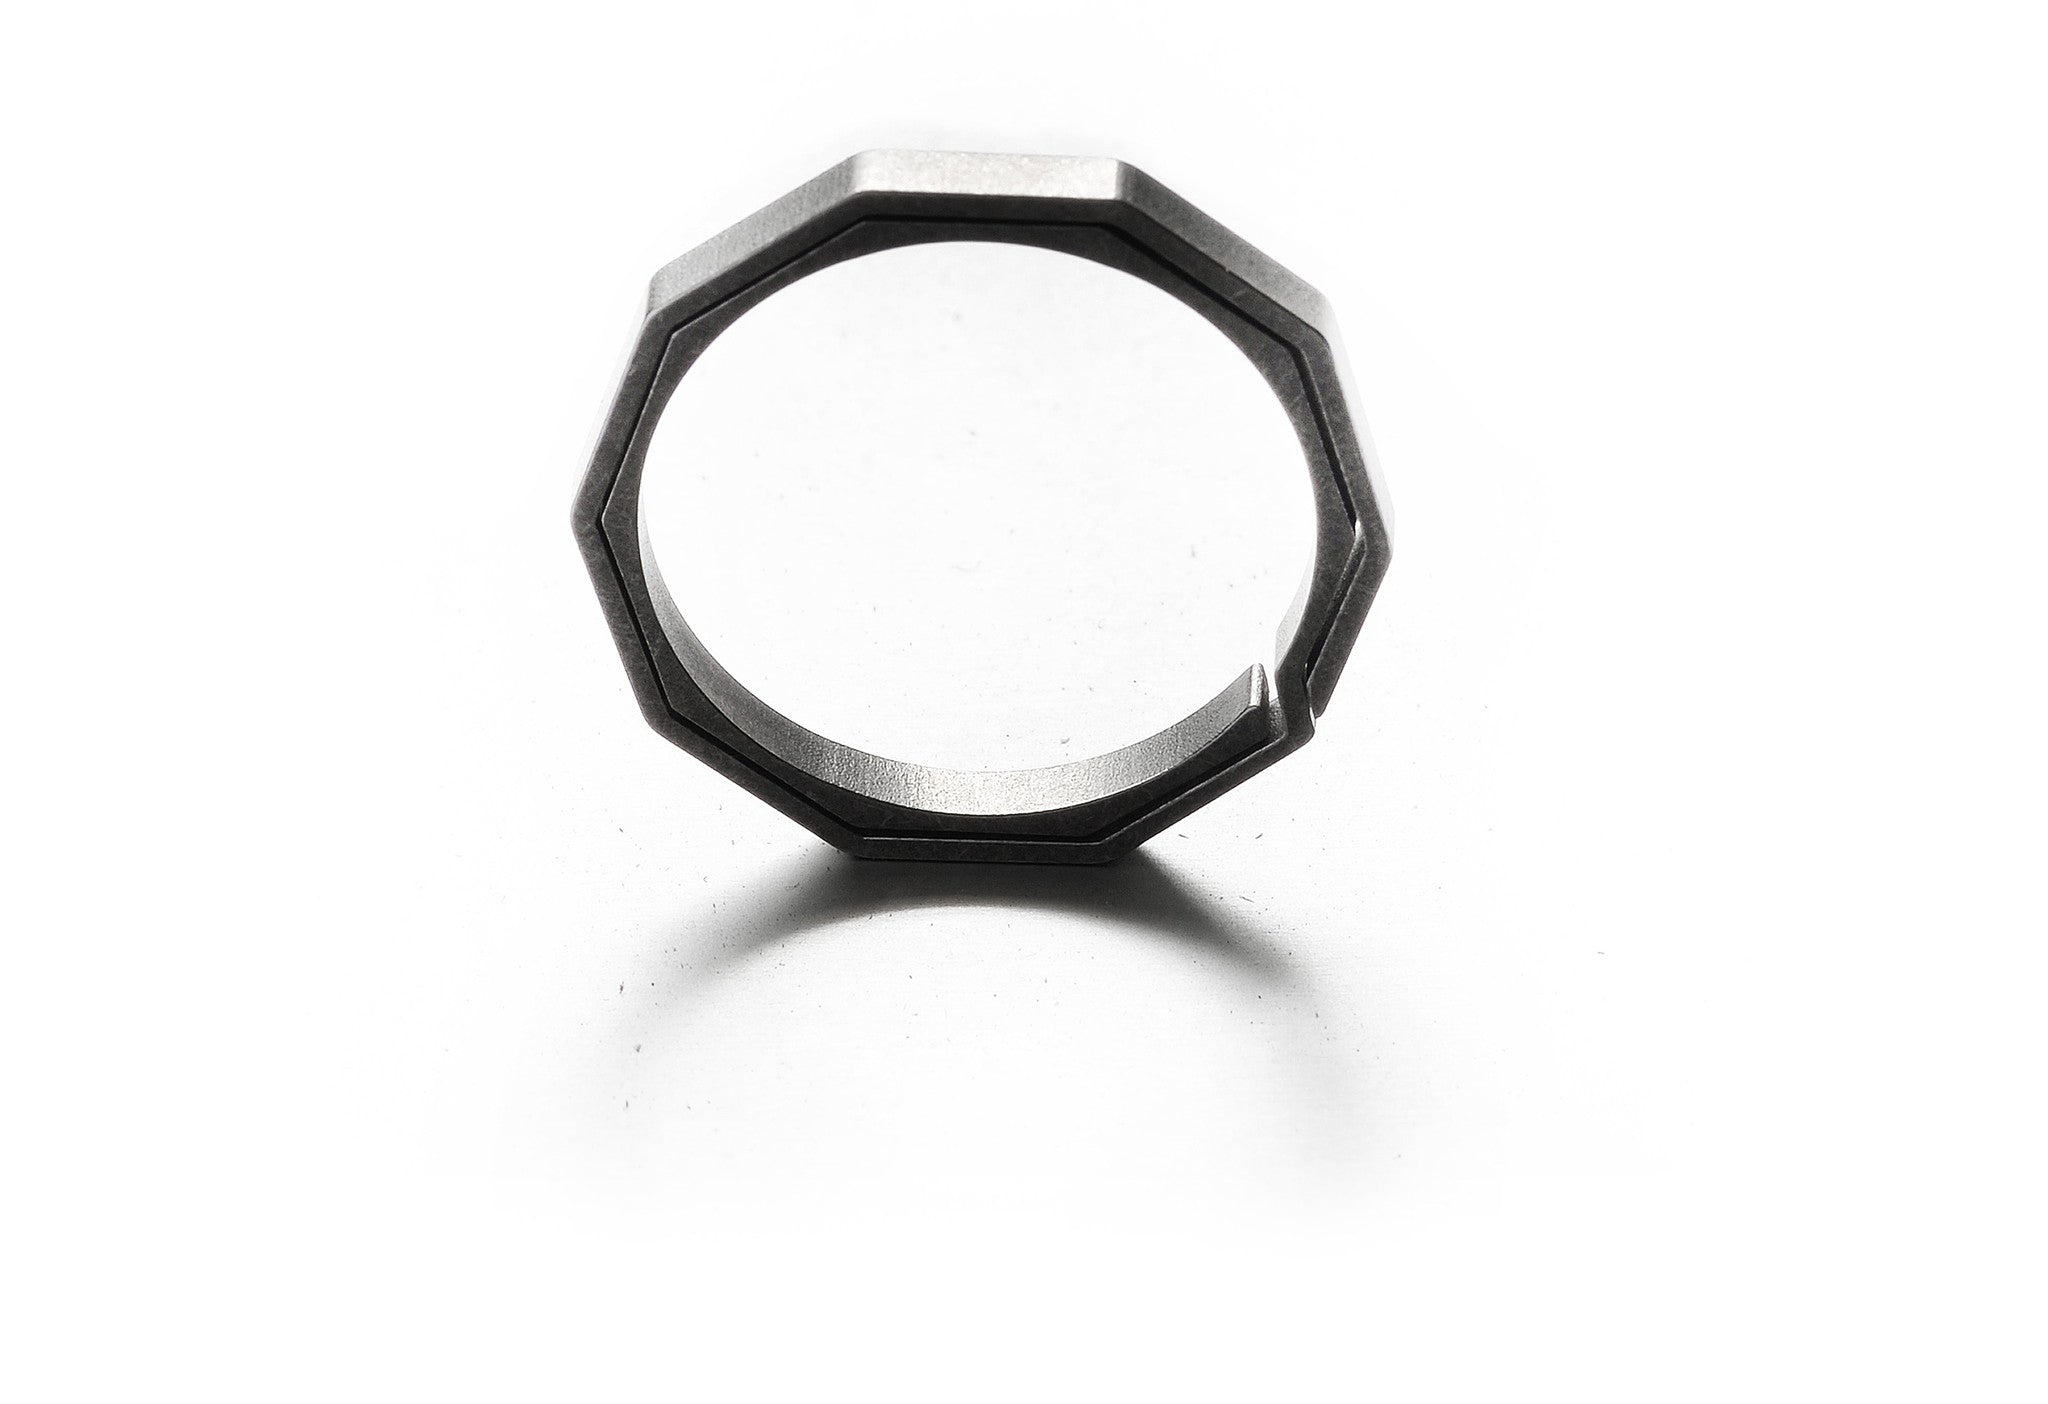 Titanium Key Ring